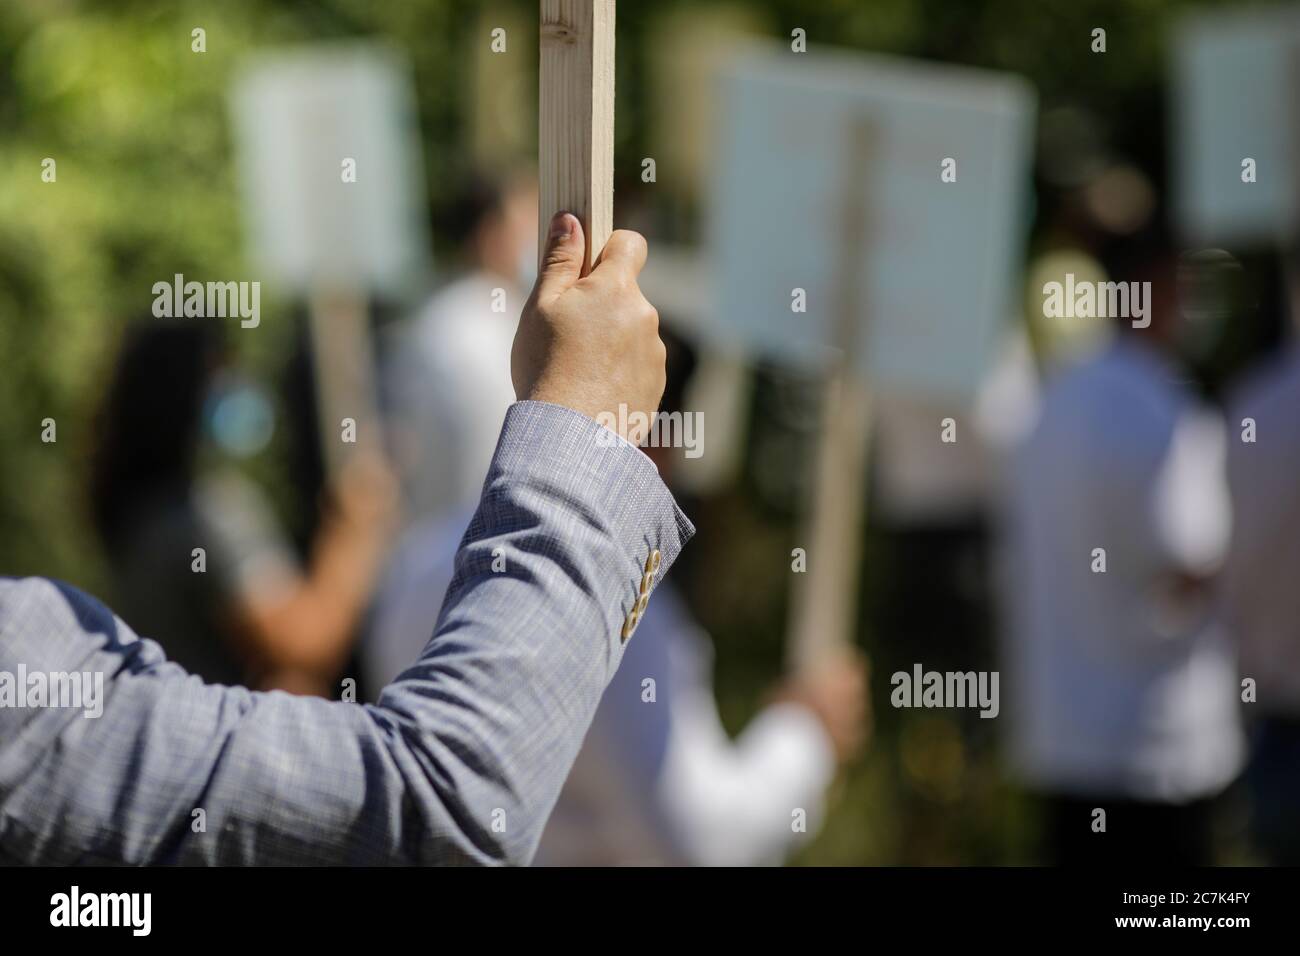 Immagine della profondità di campo (fuoco selettivo) poco profonda con la mano di un uomo che tiene un cartello di legno durante un rally politico. Foto Stock